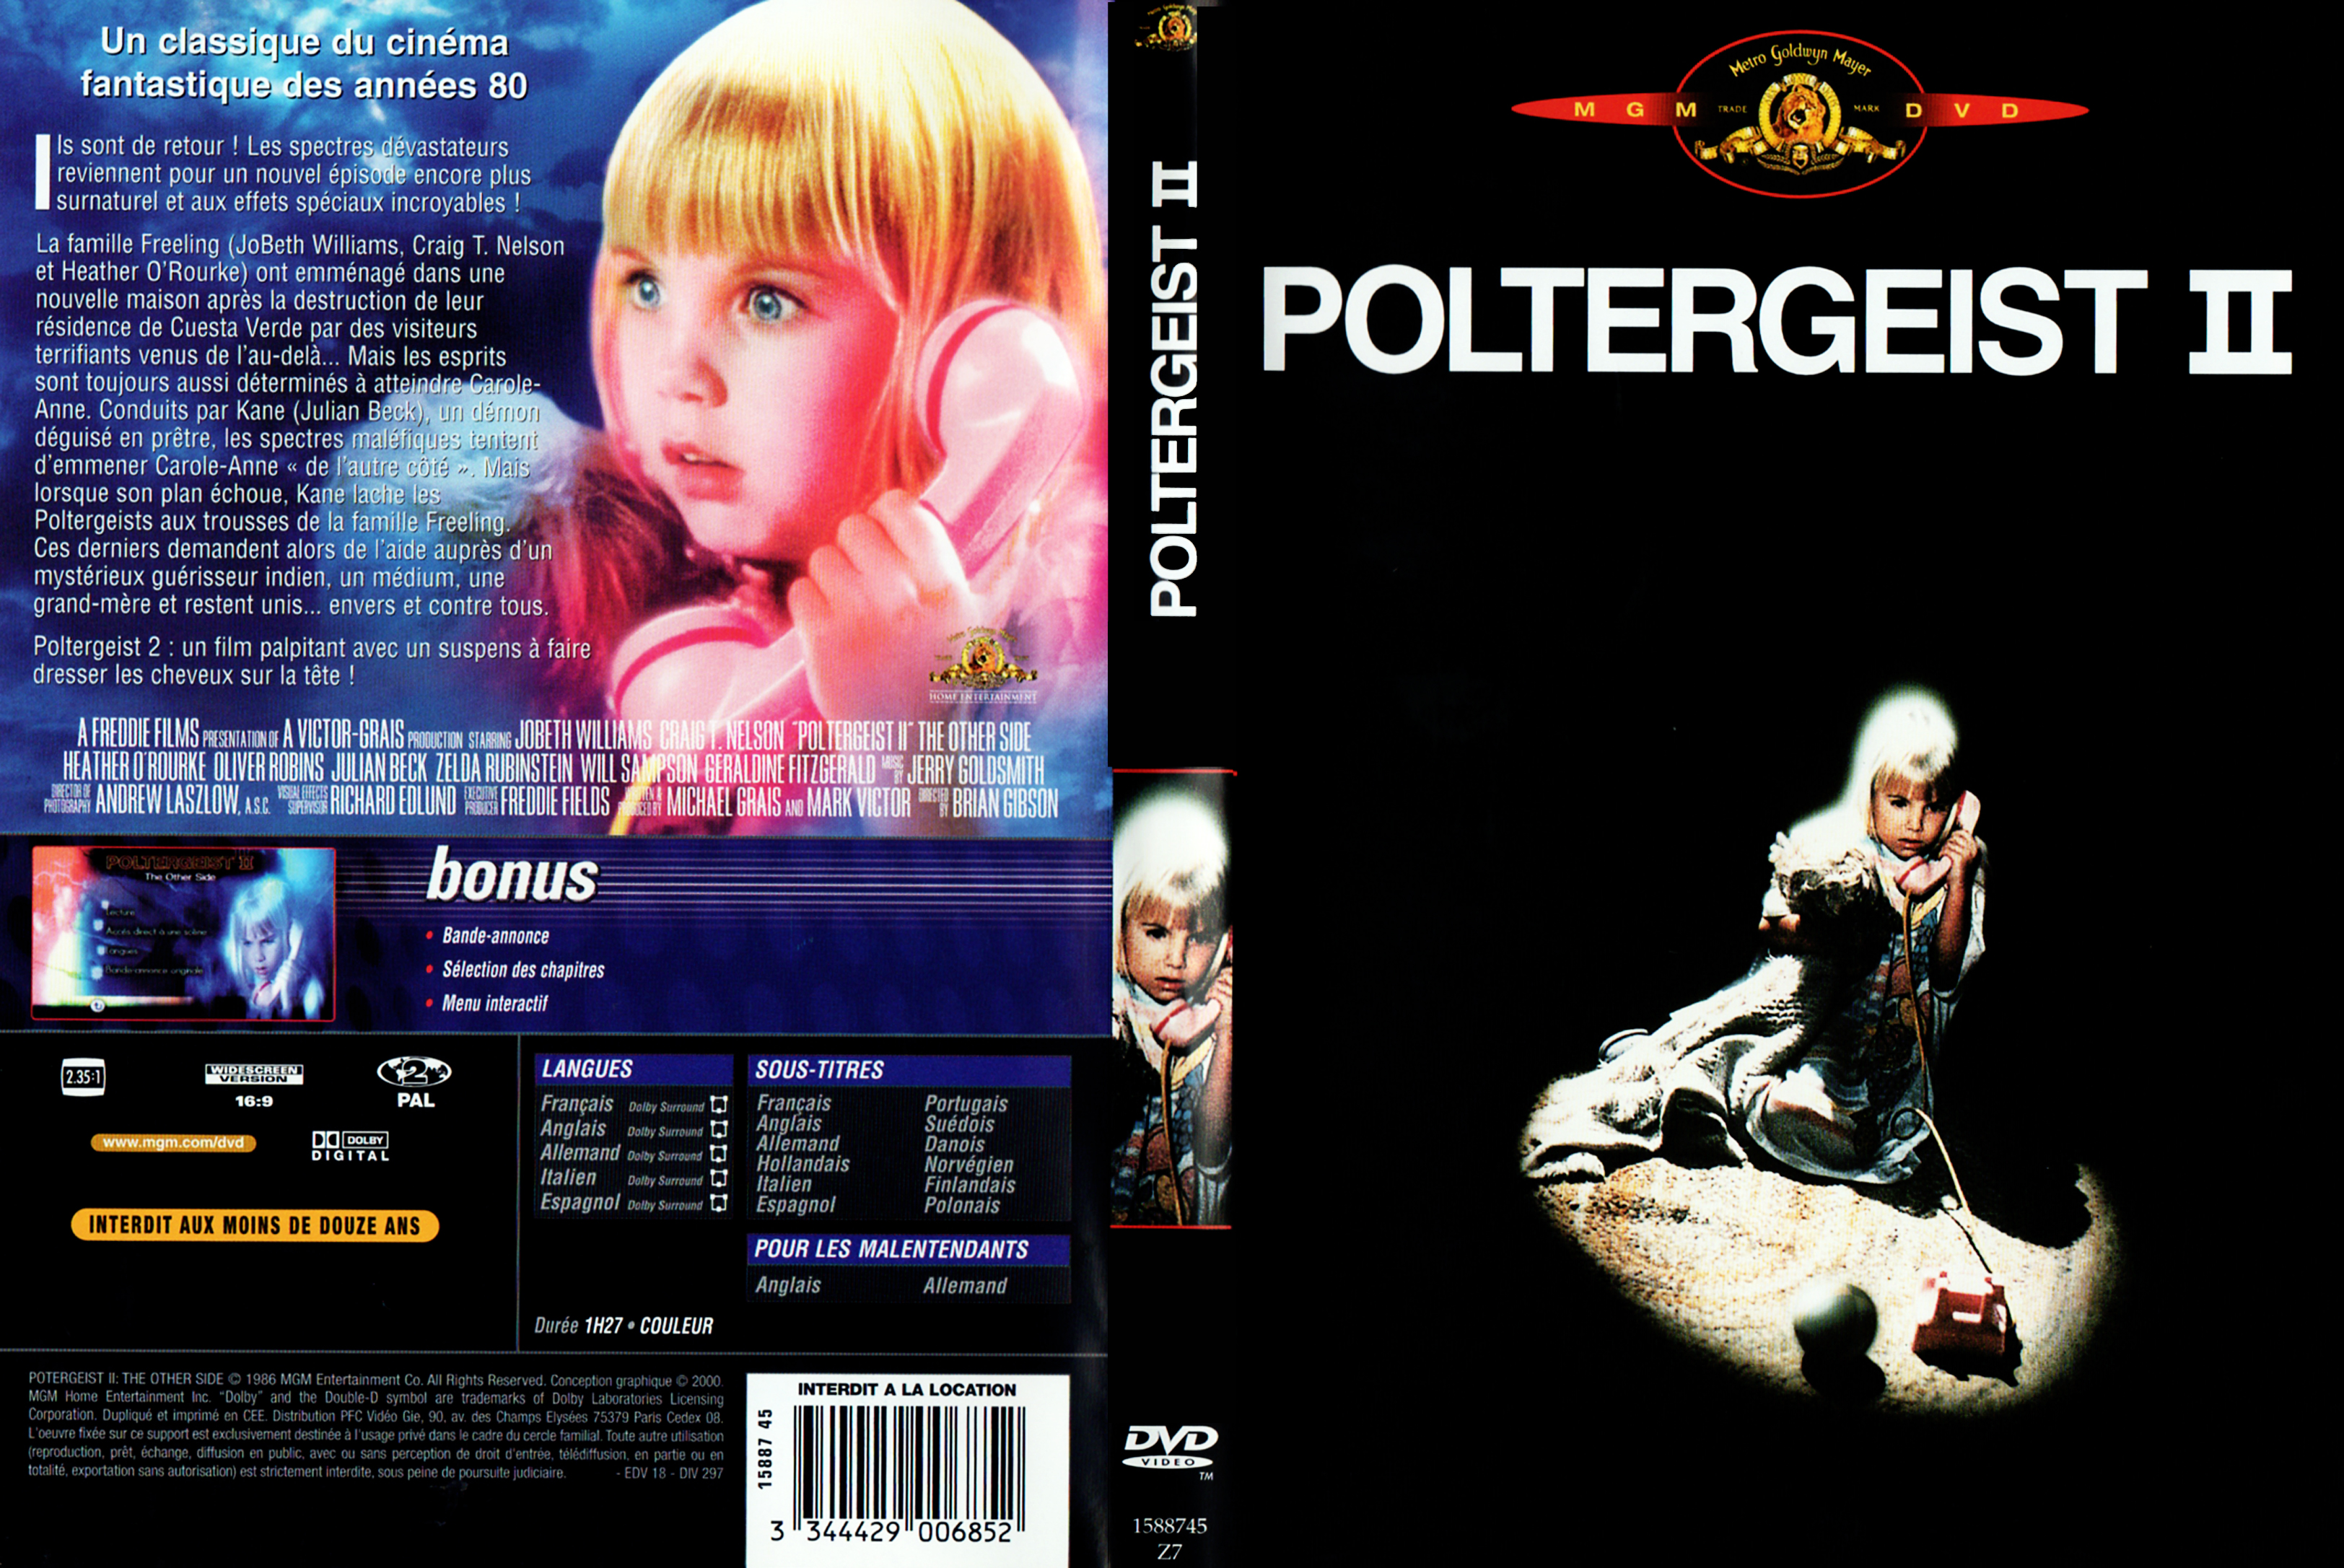 Jaquette DVD Poltergeist 2